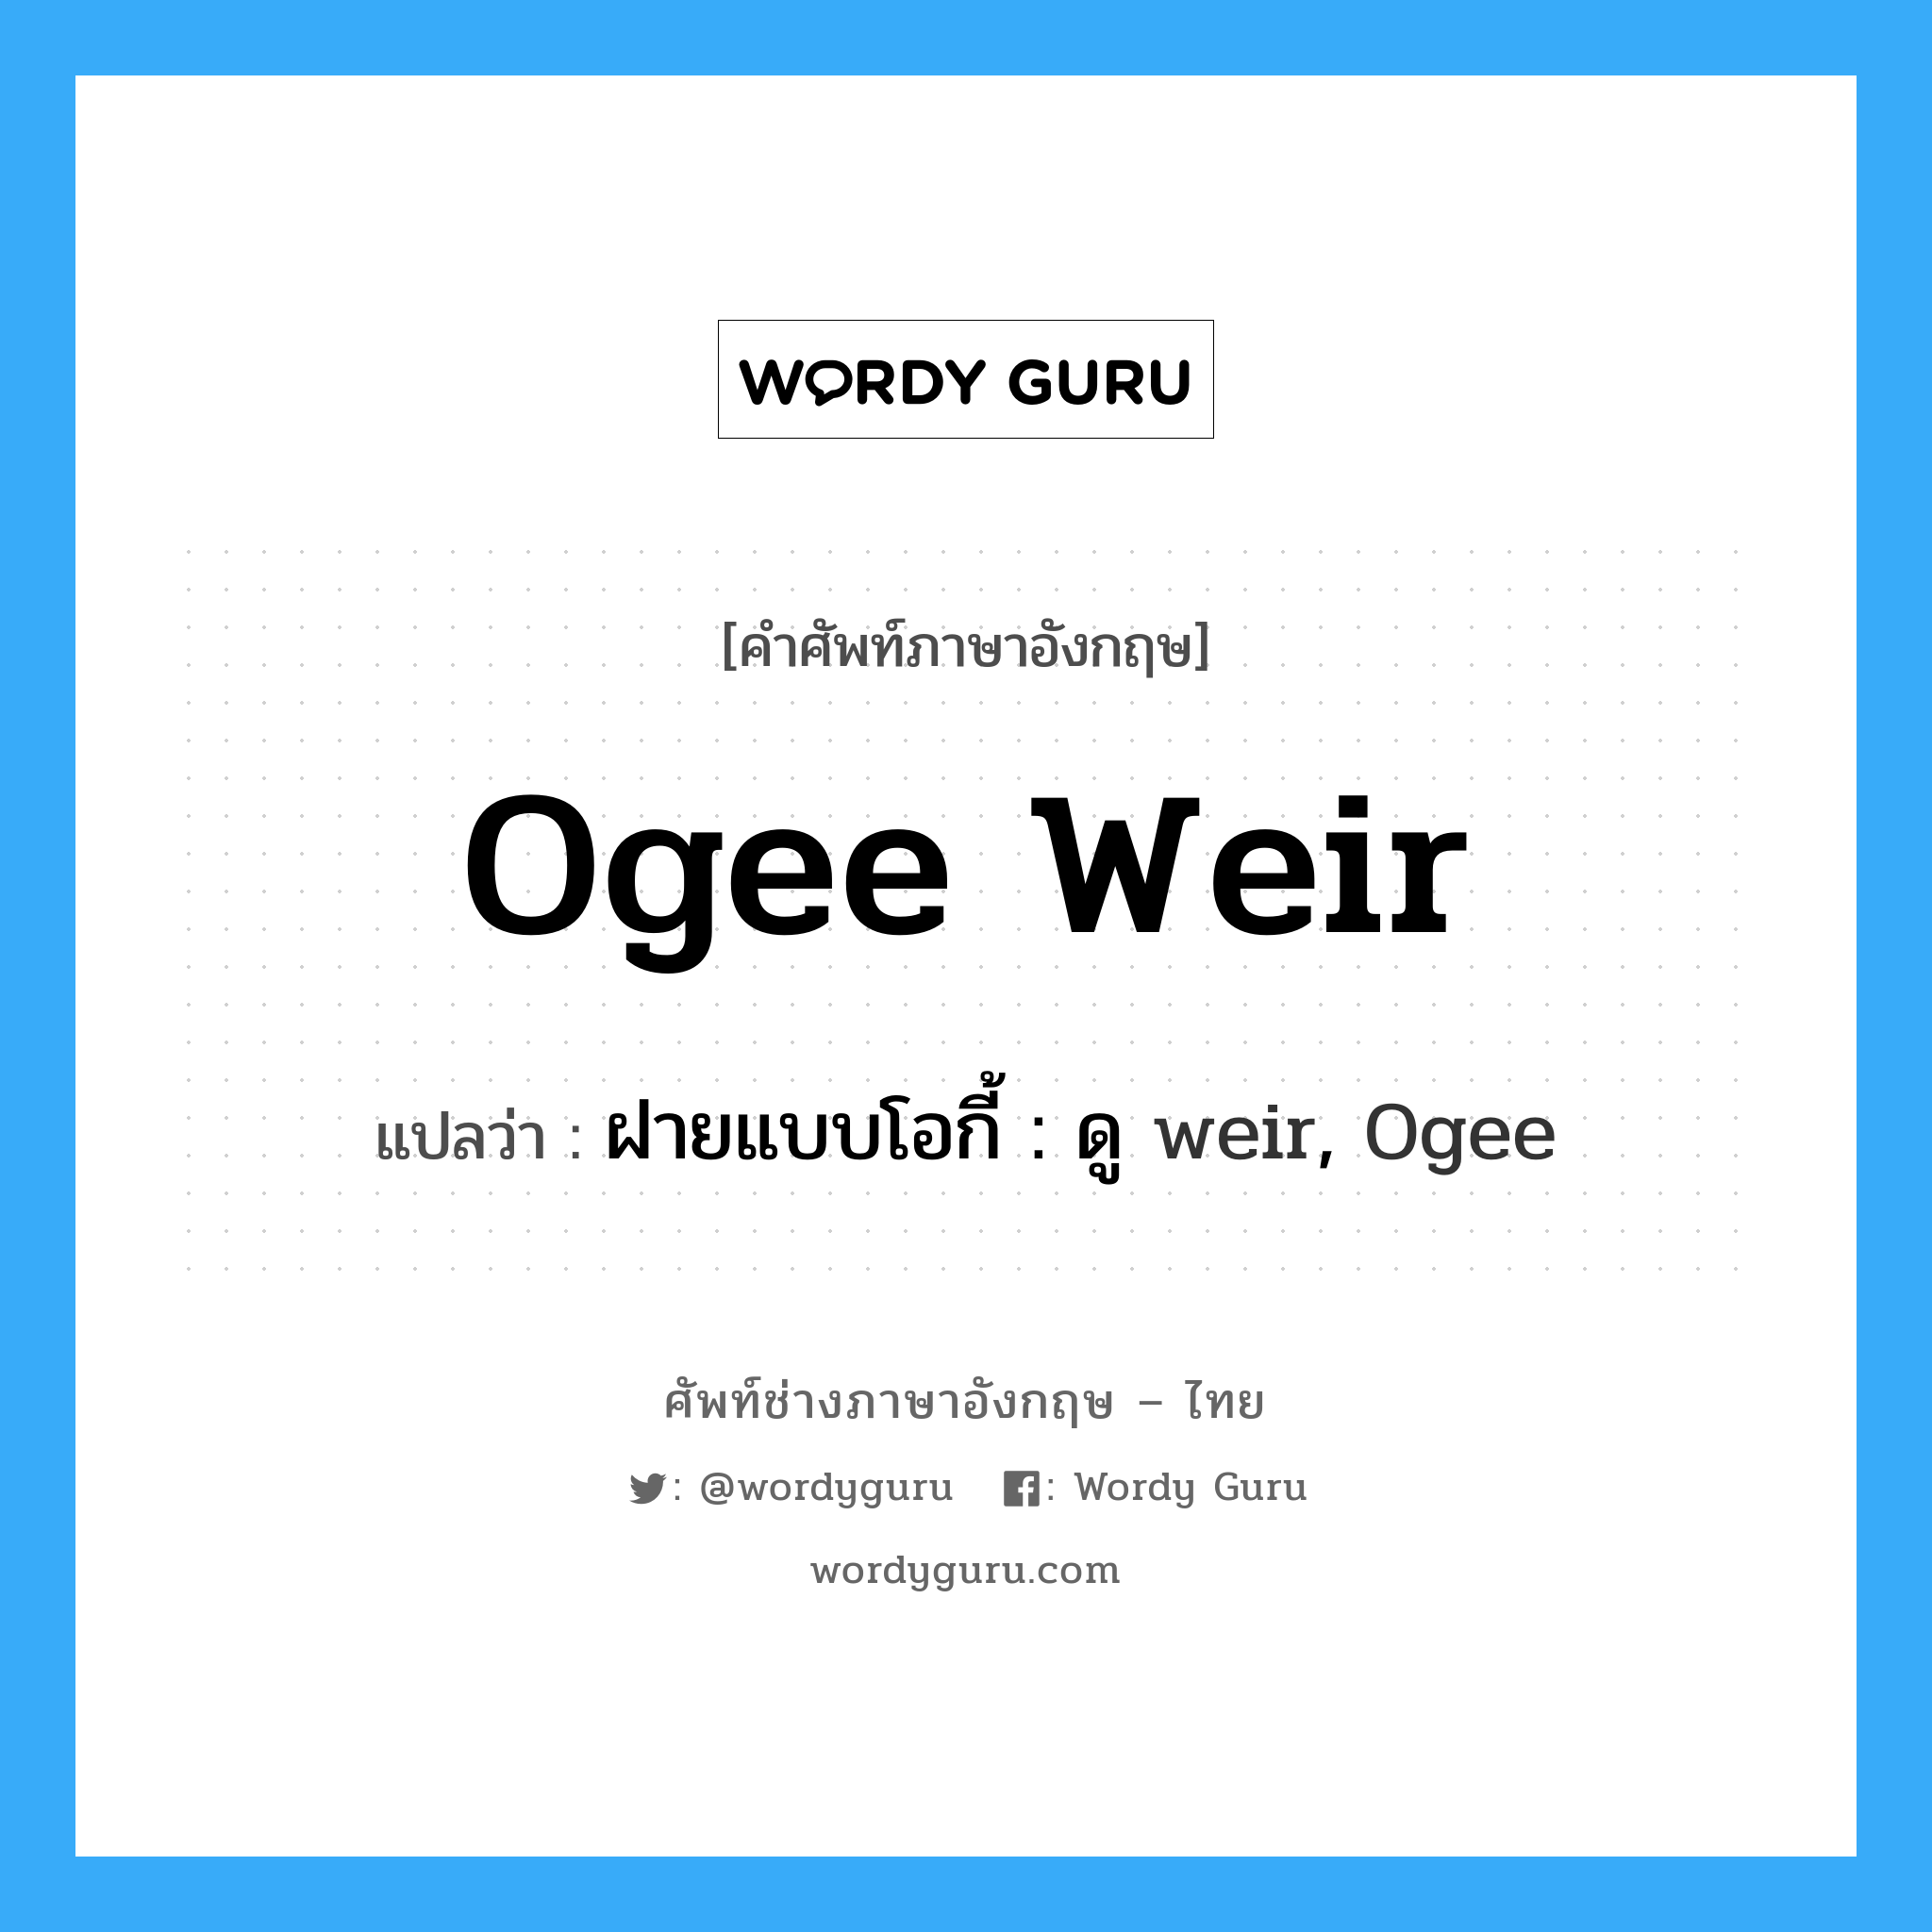 ฝายแบบโอกี้ : ดู weir, Ogee ภาษาอังกฤษ?, คำศัพท์ช่างภาษาอังกฤษ - ไทย ฝายแบบโอกี้ : ดู weir, Ogee คำศัพท์ภาษาอังกฤษ ฝายแบบโอกี้ : ดู weir, Ogee แปลว่า Ogee weir